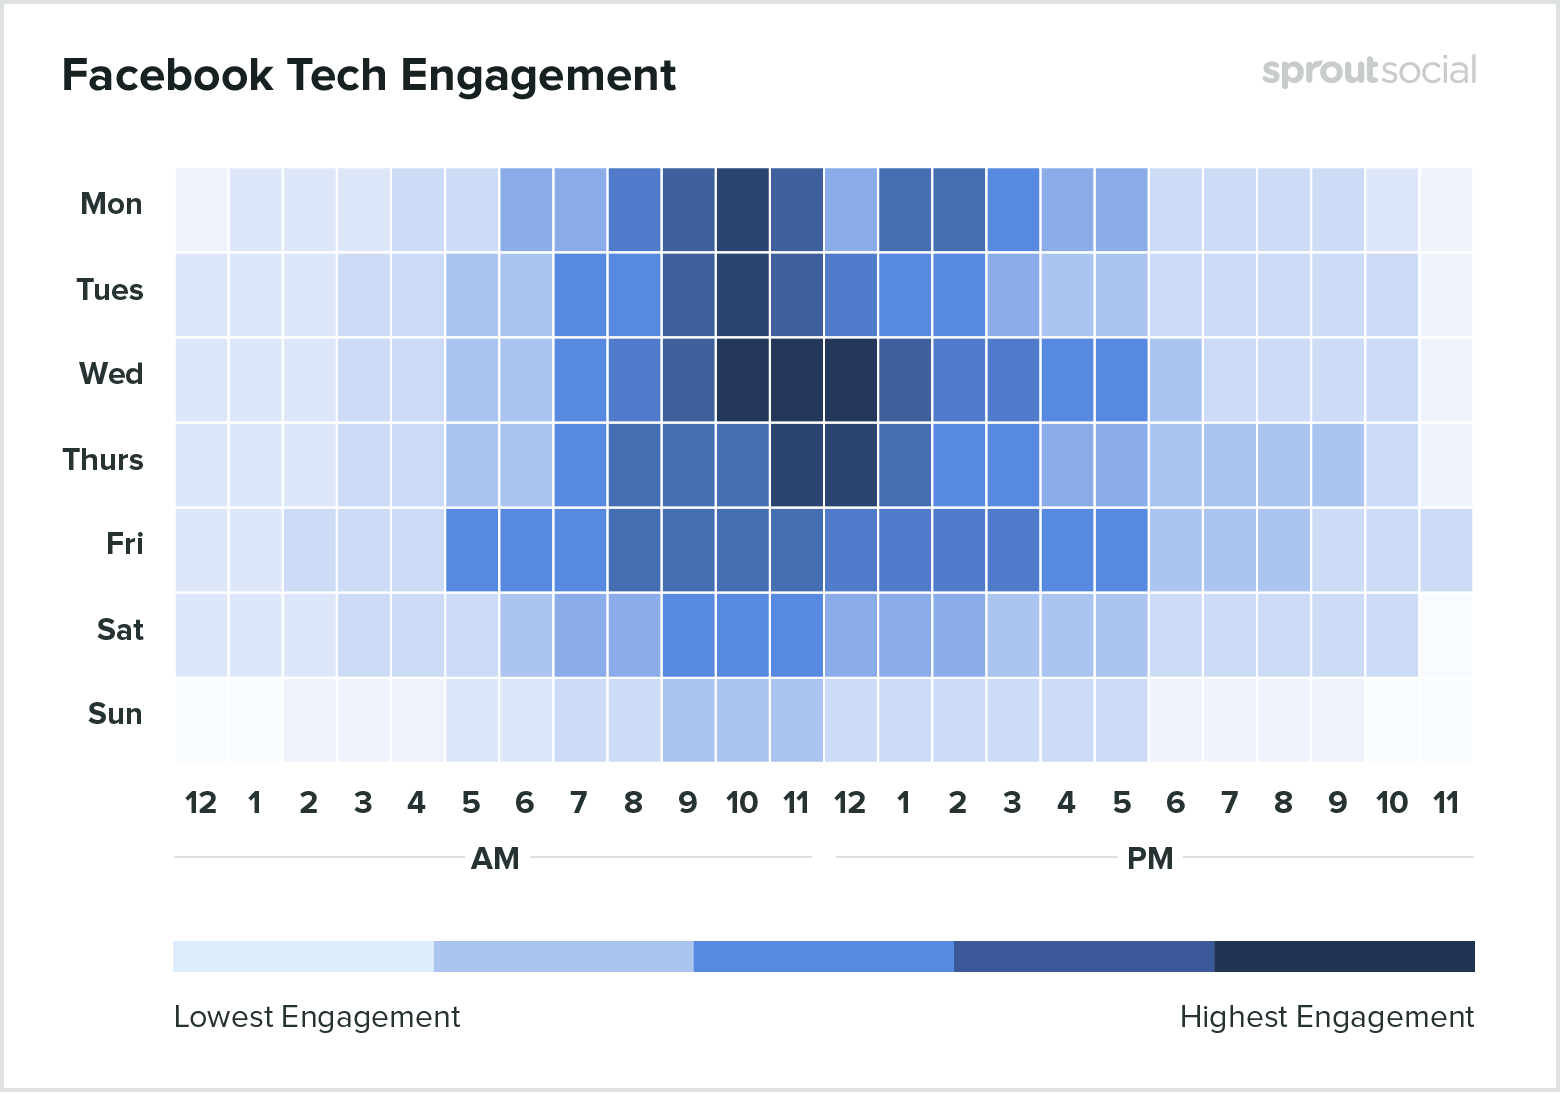 Gráfico mostrando dados globais para empresas de tecnologia sobre qual o melhor horário para postar no Facebook